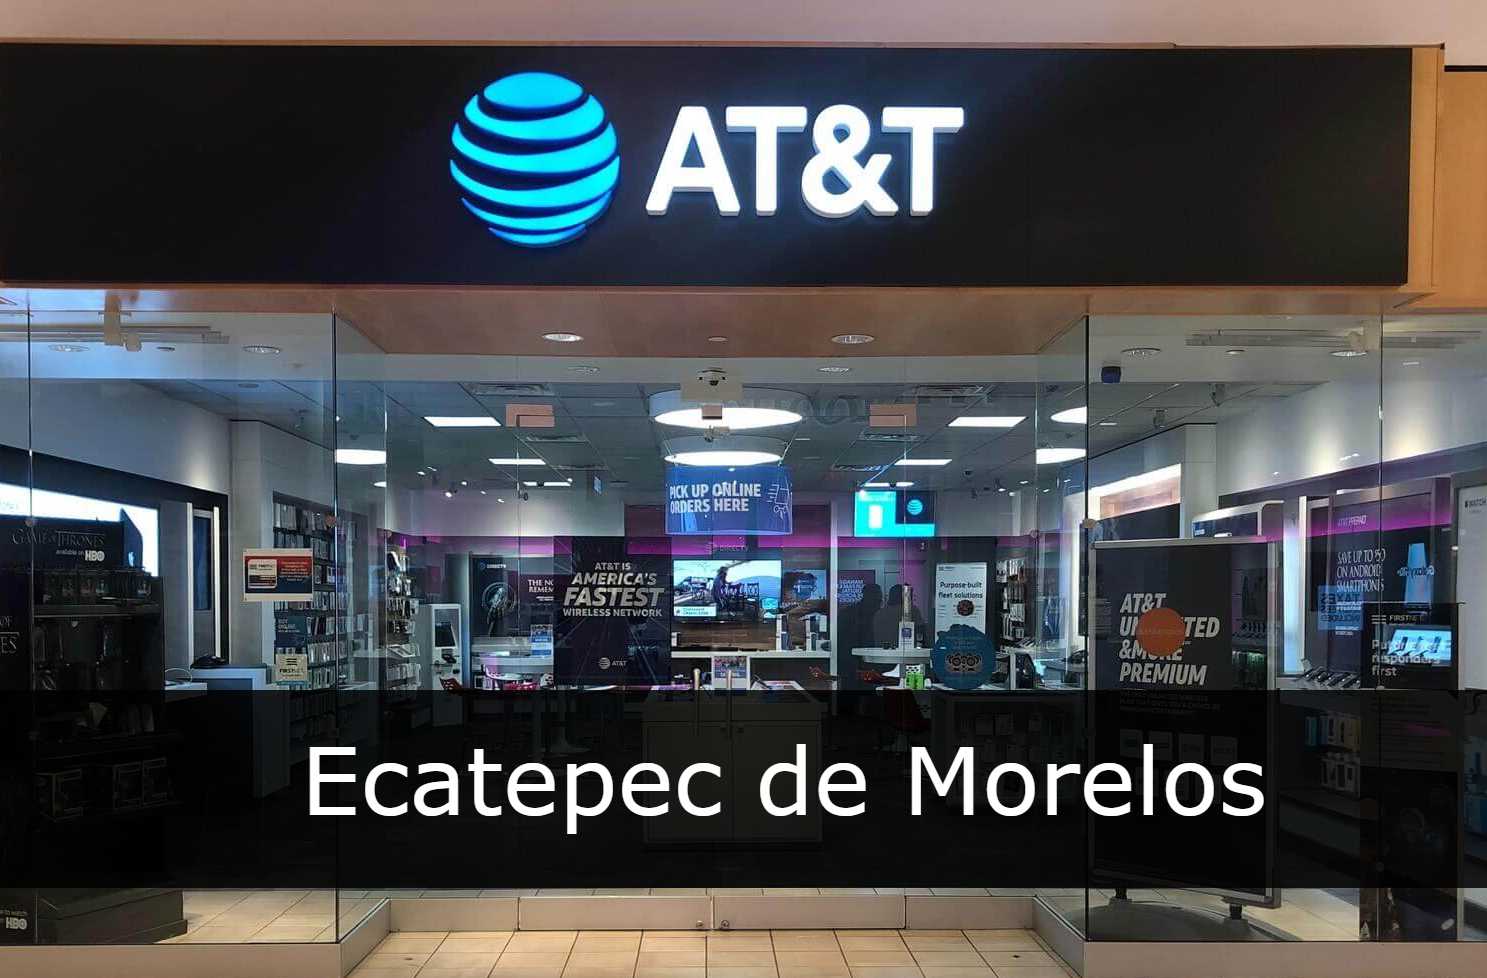 AT&T Ecatepec de Morelos